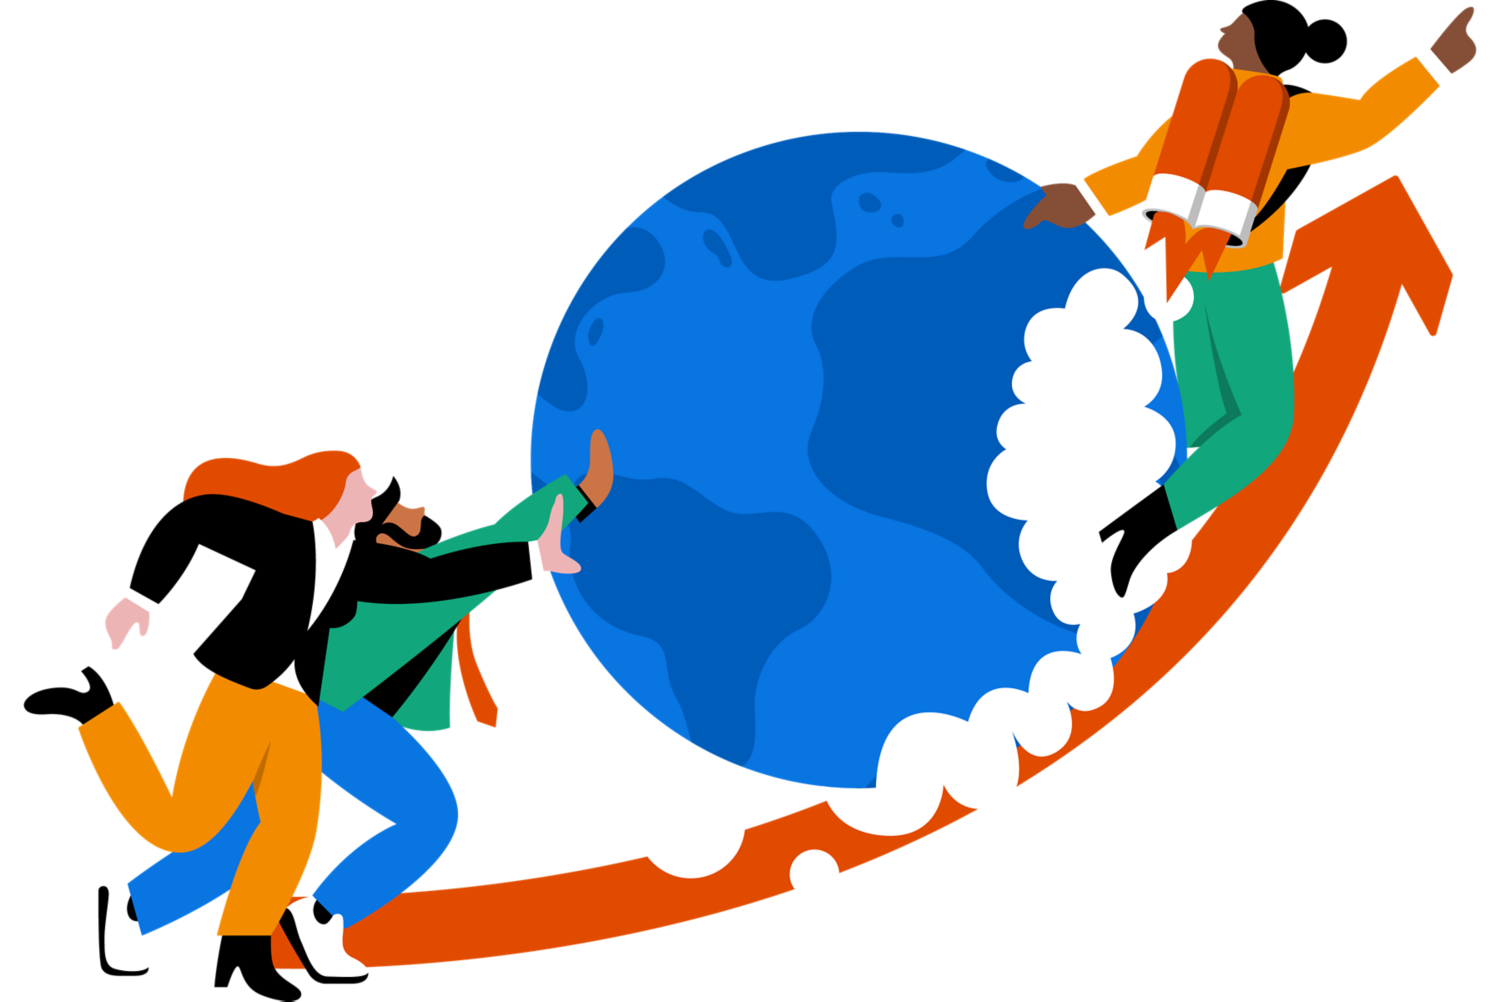 Des gens poussant un globe avec une personne sur une fusée.